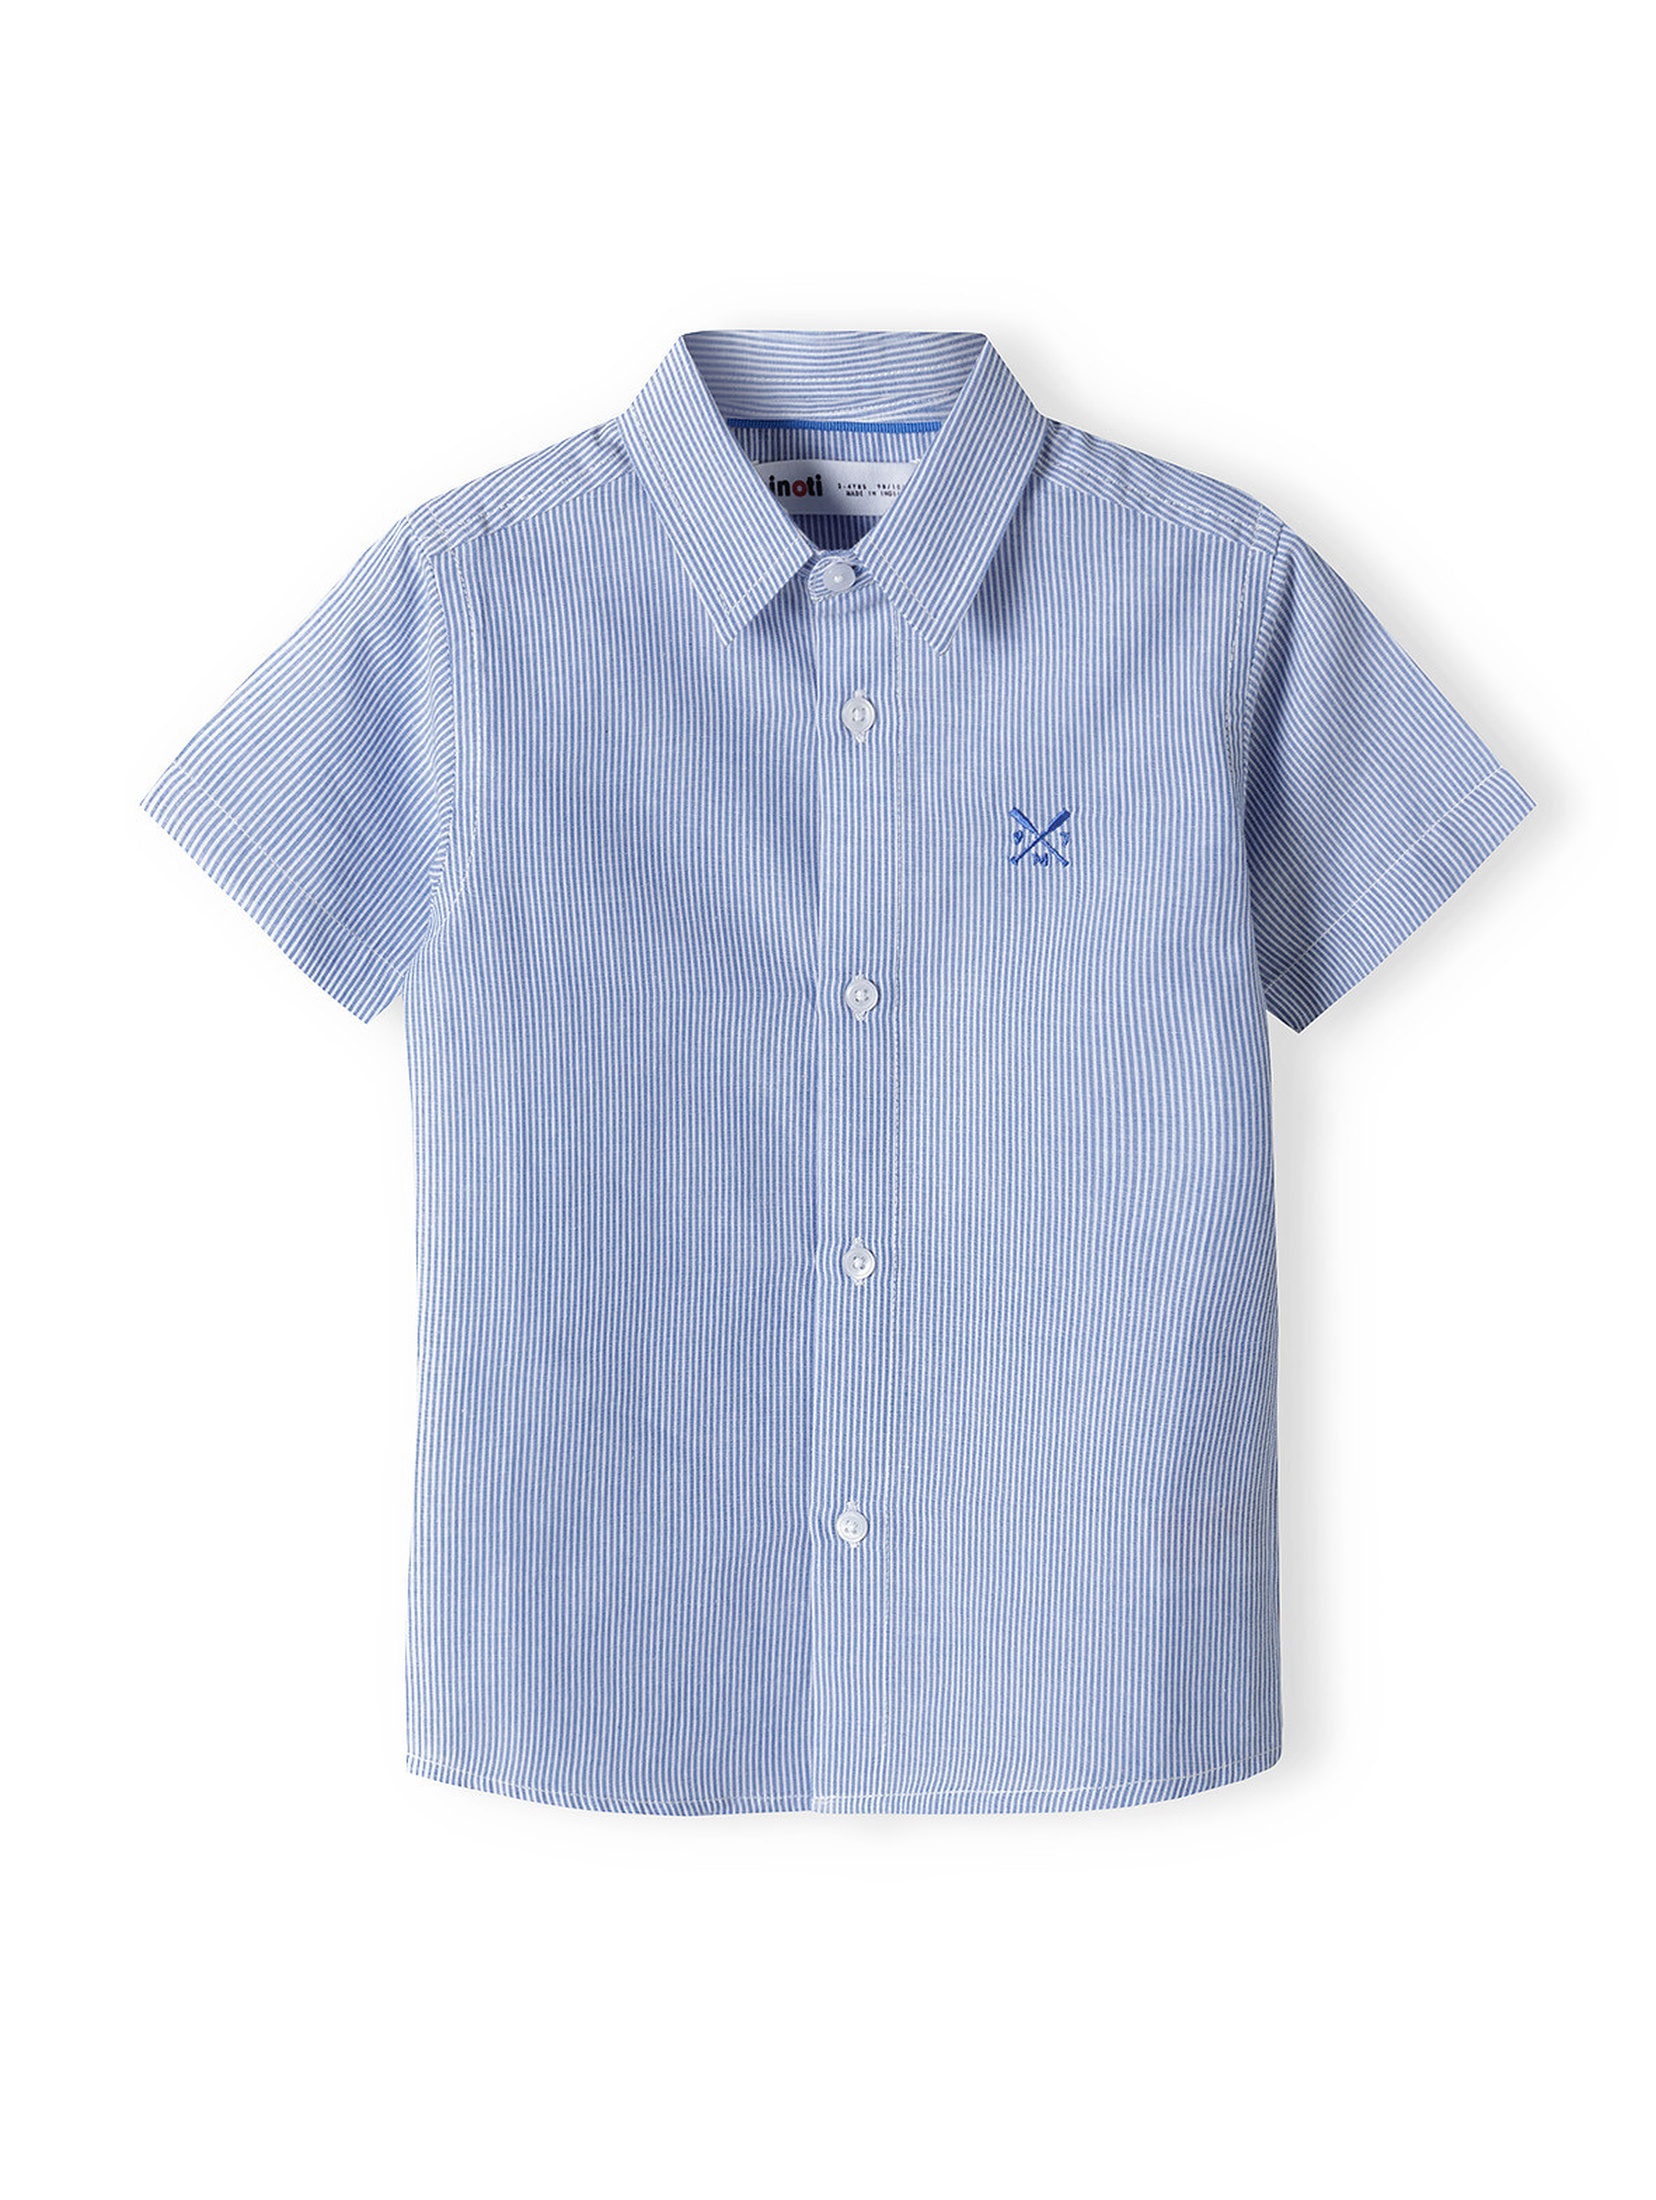 Błękitna koszula bawełniana dla chłopca z krótkim rękawem